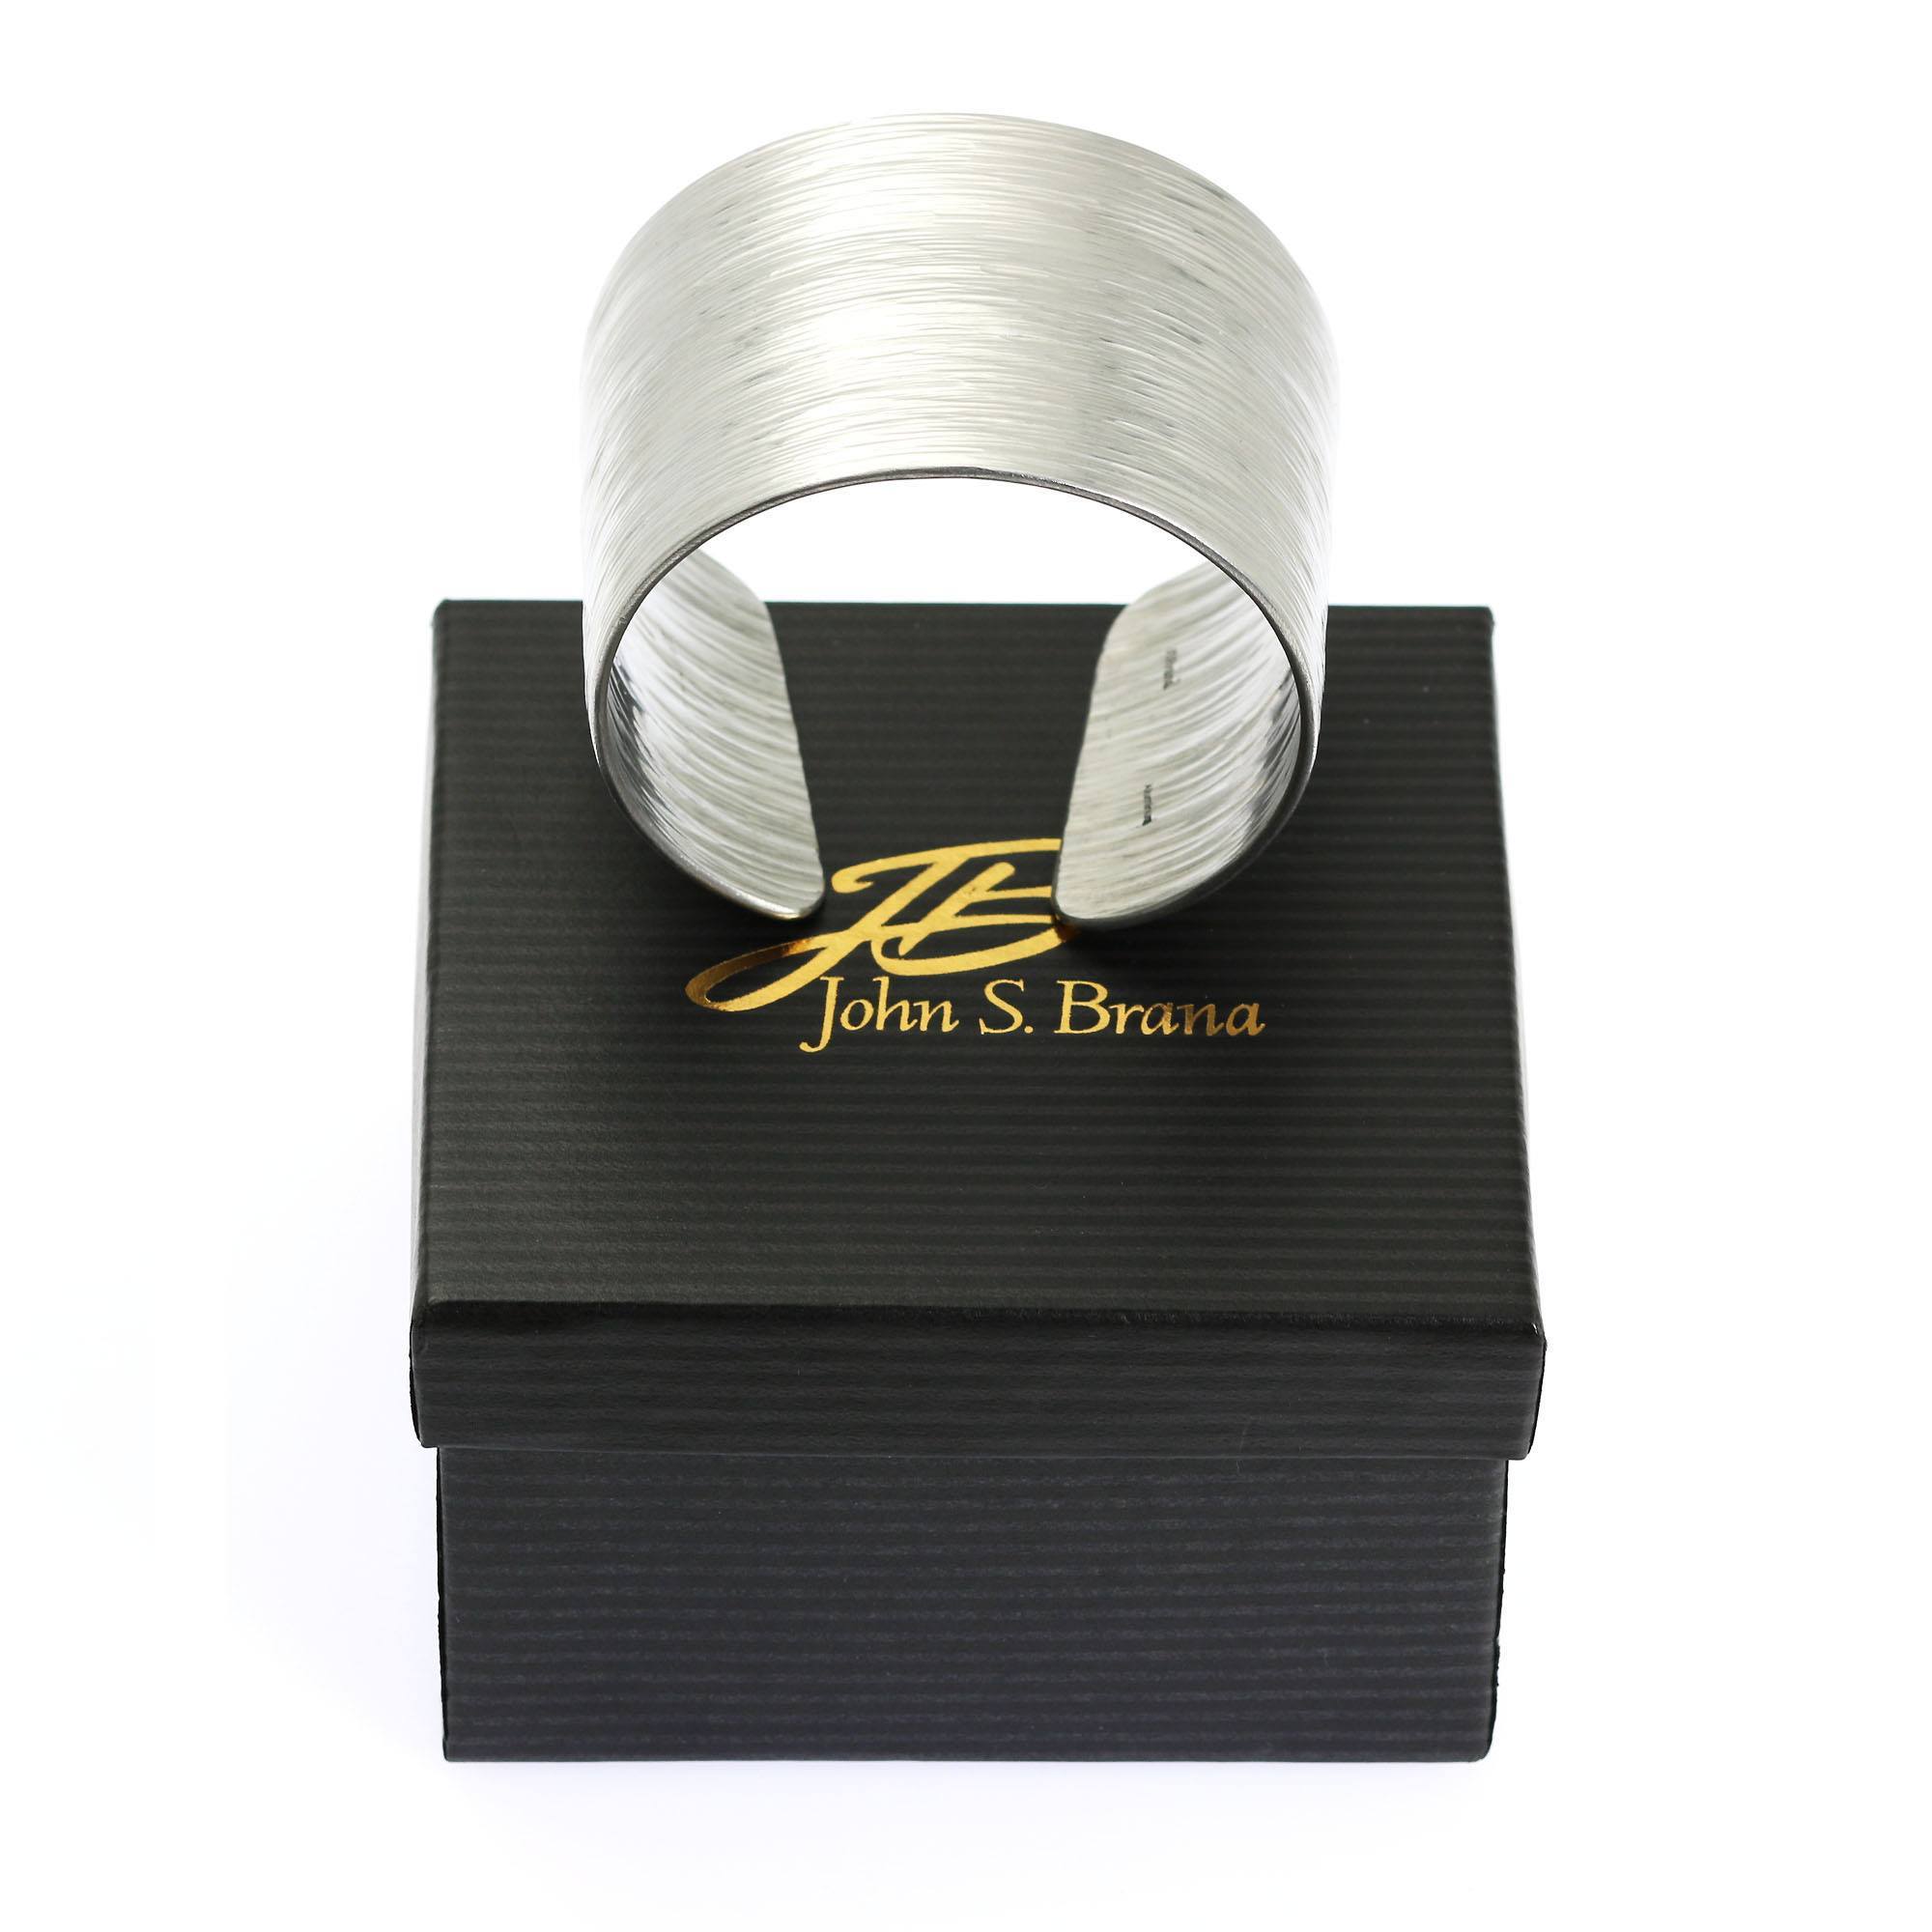 Aluminum Bark Cuff - Wide Silver Tone Cuff Bracelet with Box